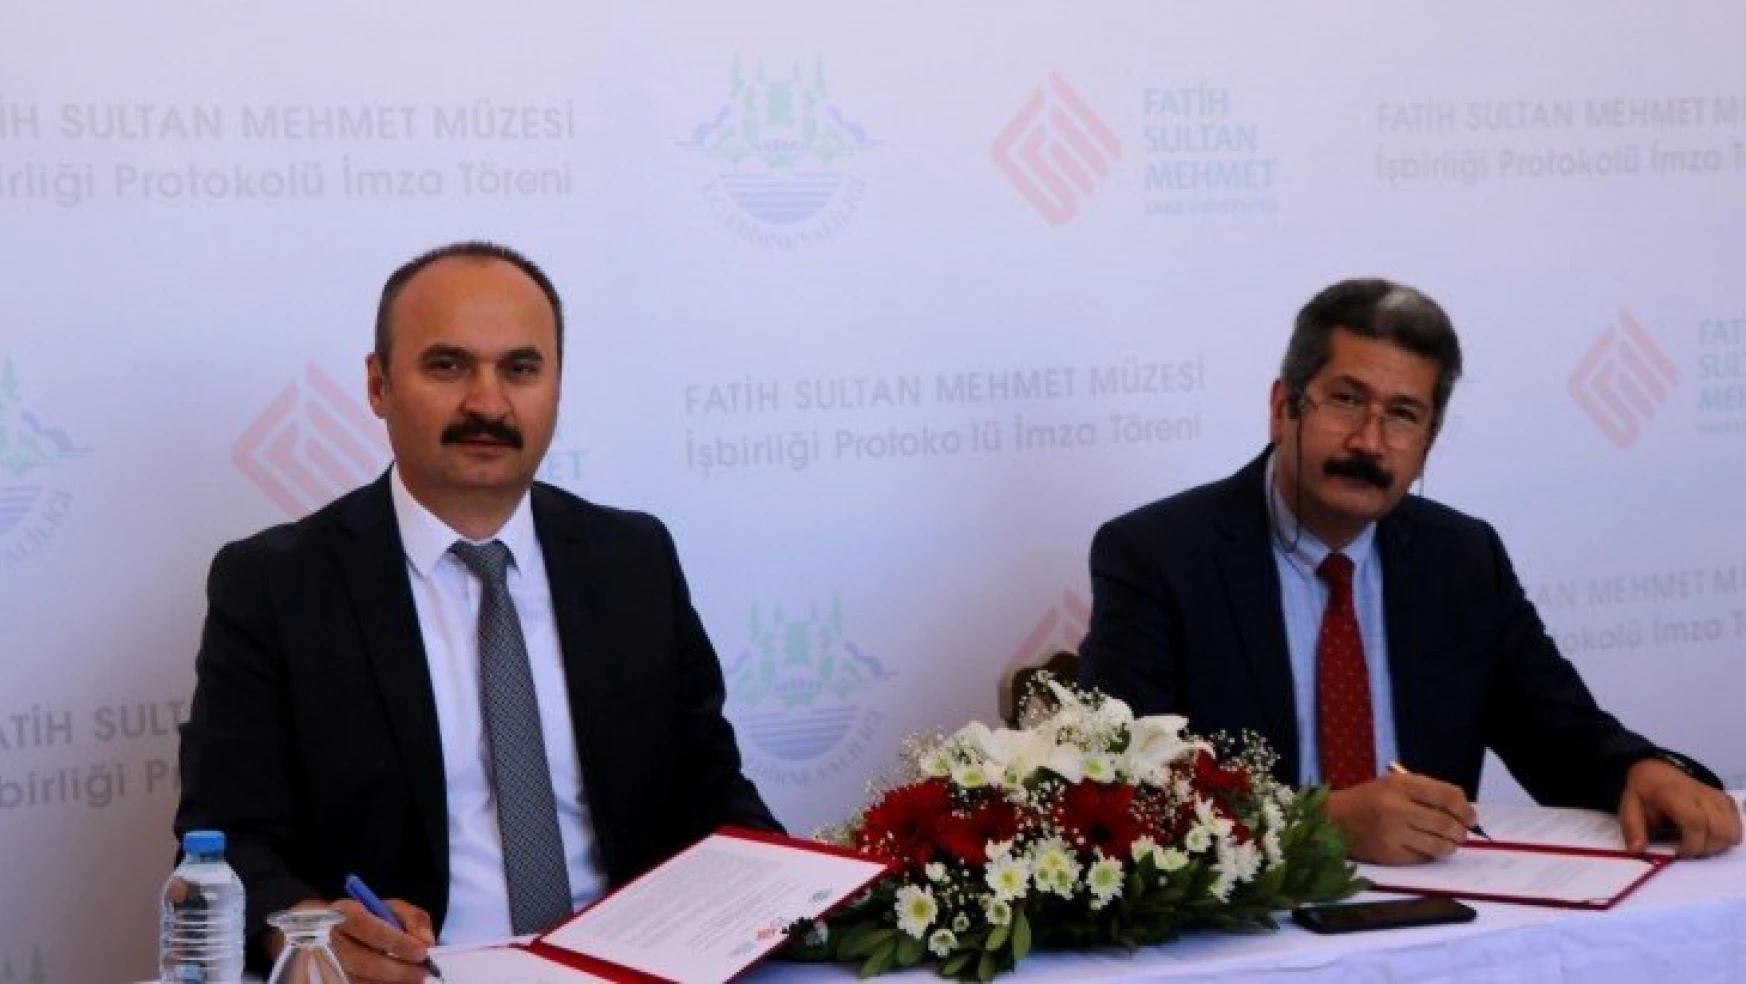 Fatih Sultan Mehmet'in eğitim gördüğü medrese müze oluyor